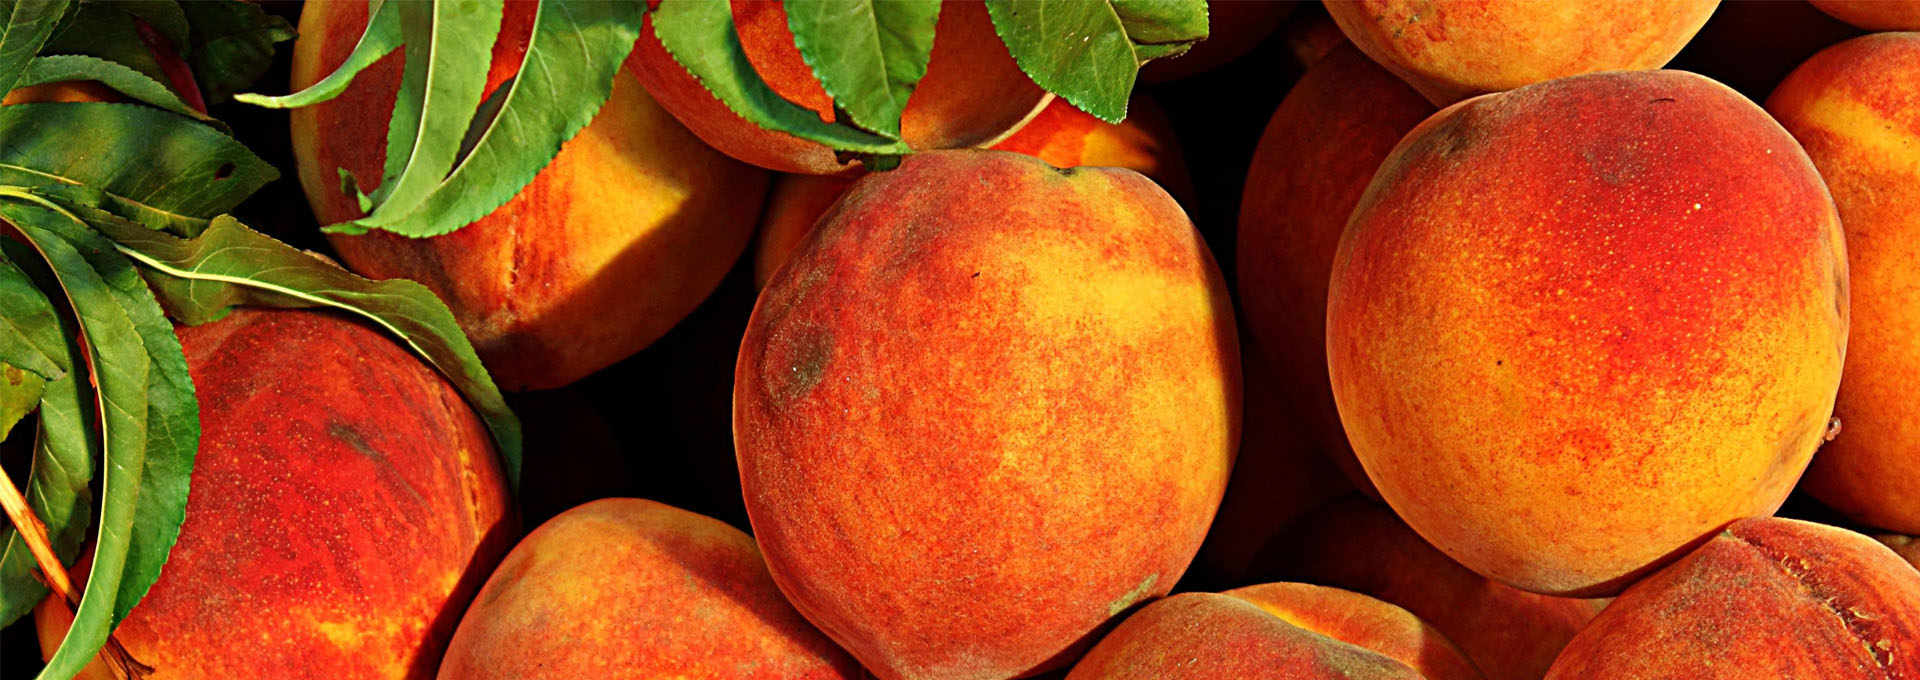 The Peaches of Emilia-Romagna